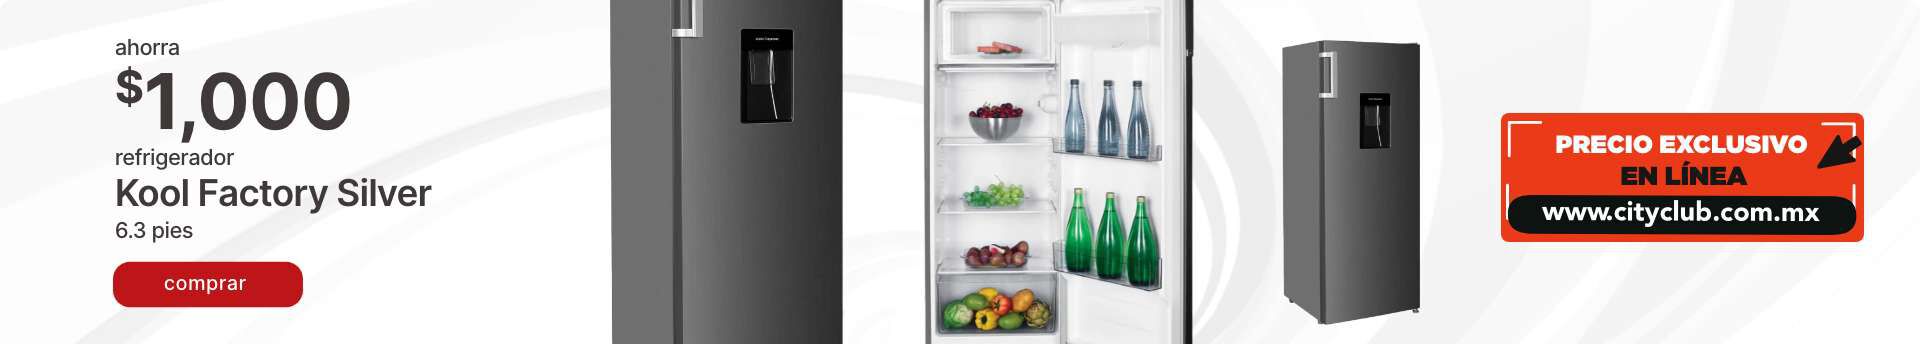 Ahorra $1,000 en refrigerador KOOL FACTORY SILVER 6.3 pies